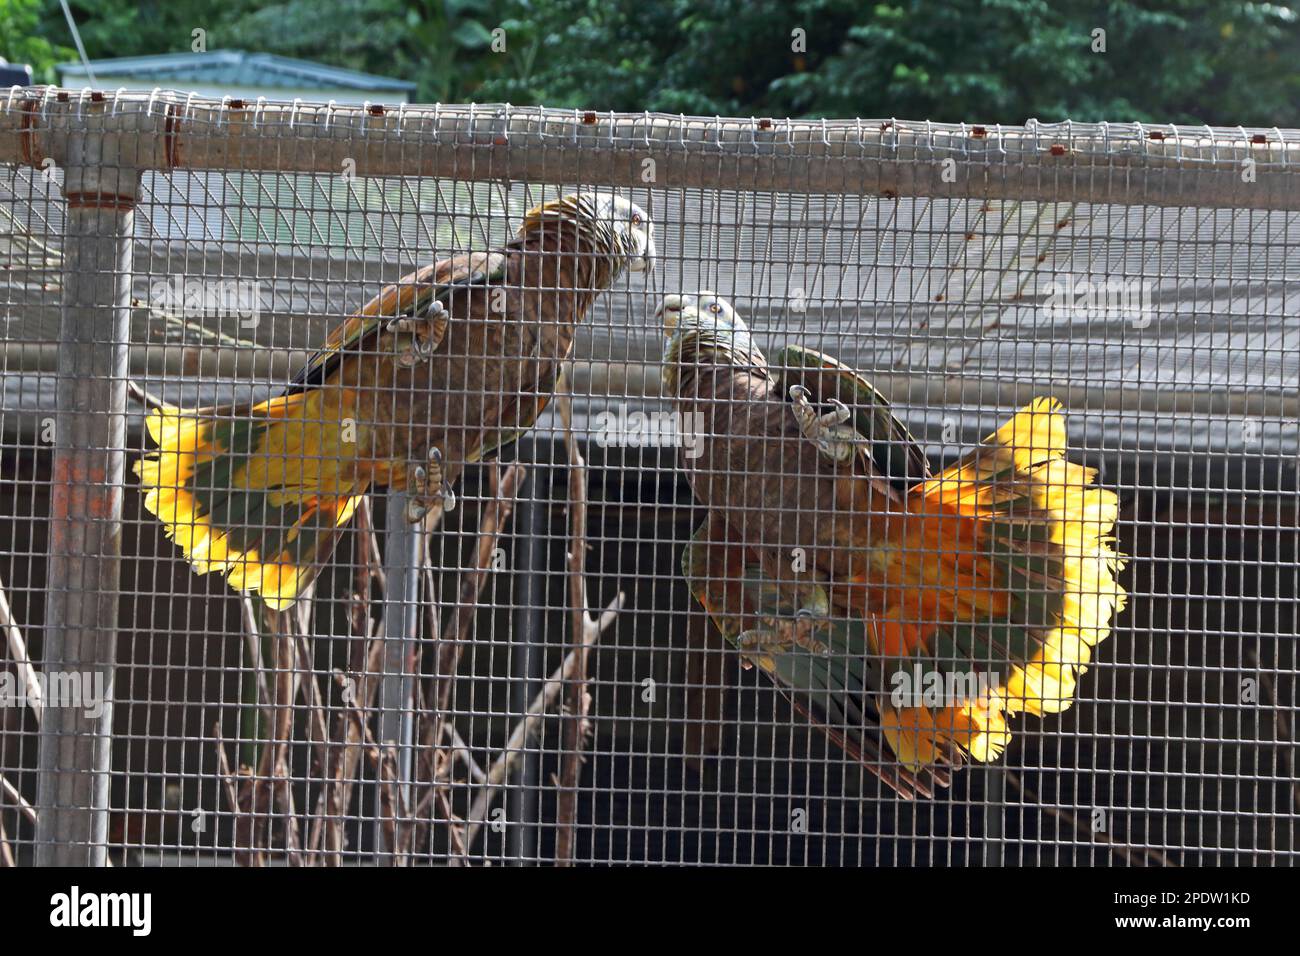 Coppia di pappagalli di St Vincent, parte del programma di allevamento in cattività per questi uccelli rari. Foto Stock